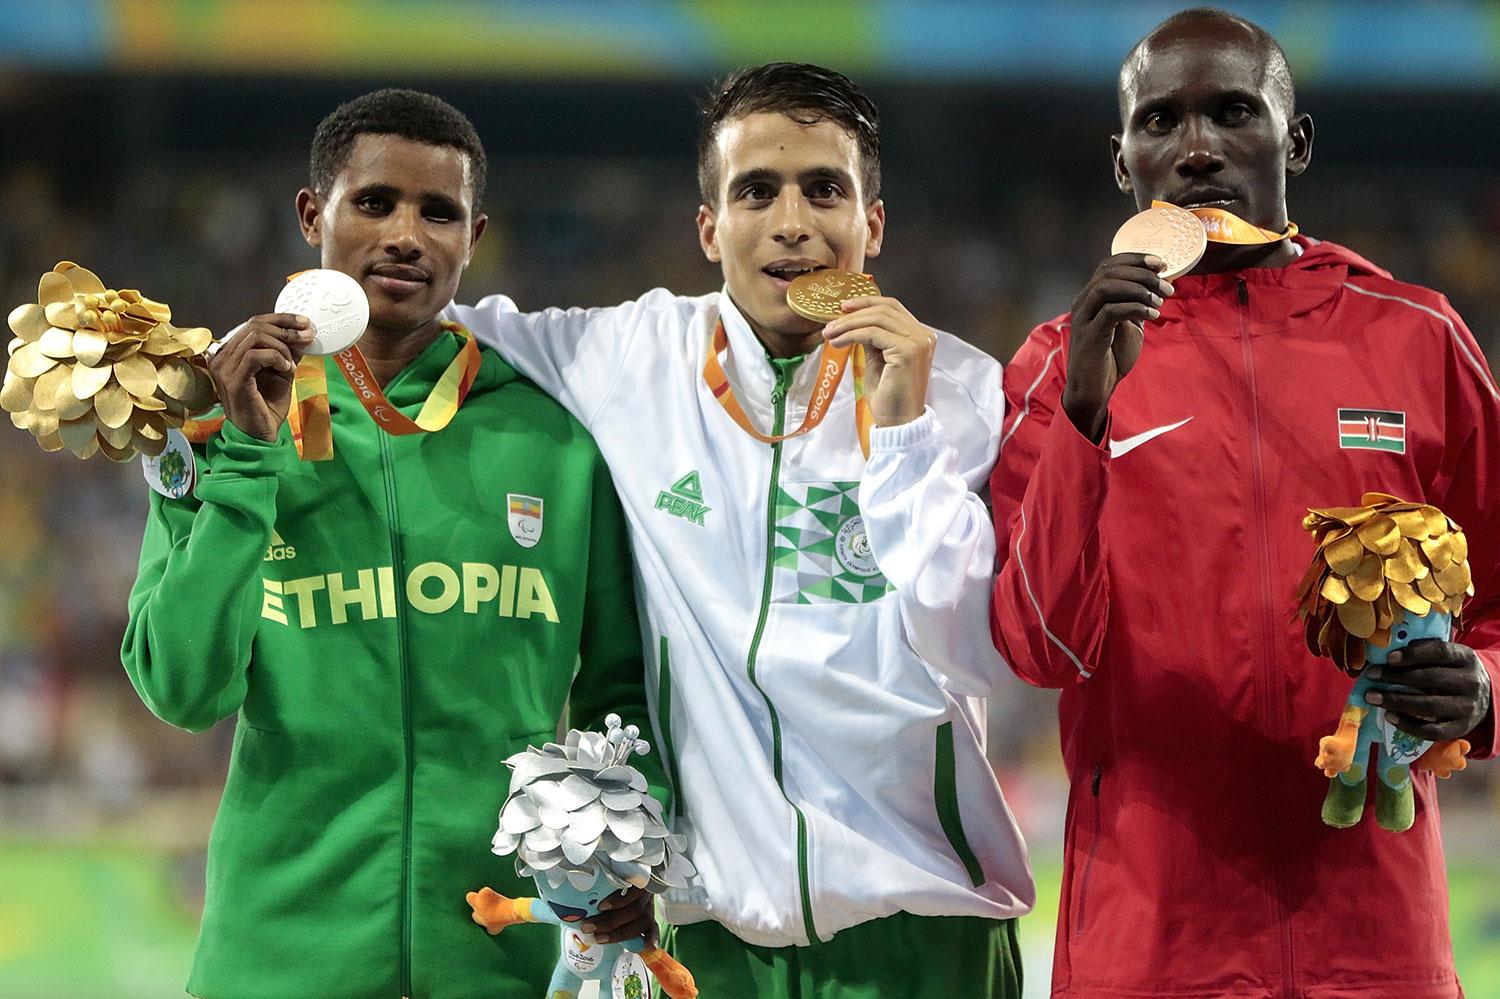 Tamiru Demisse (silver), Abdellatif Baka (guld) och Henry Kirwa (brons) sprang alla snabbare än OS-guldvinnaren Matt Centrowitz.